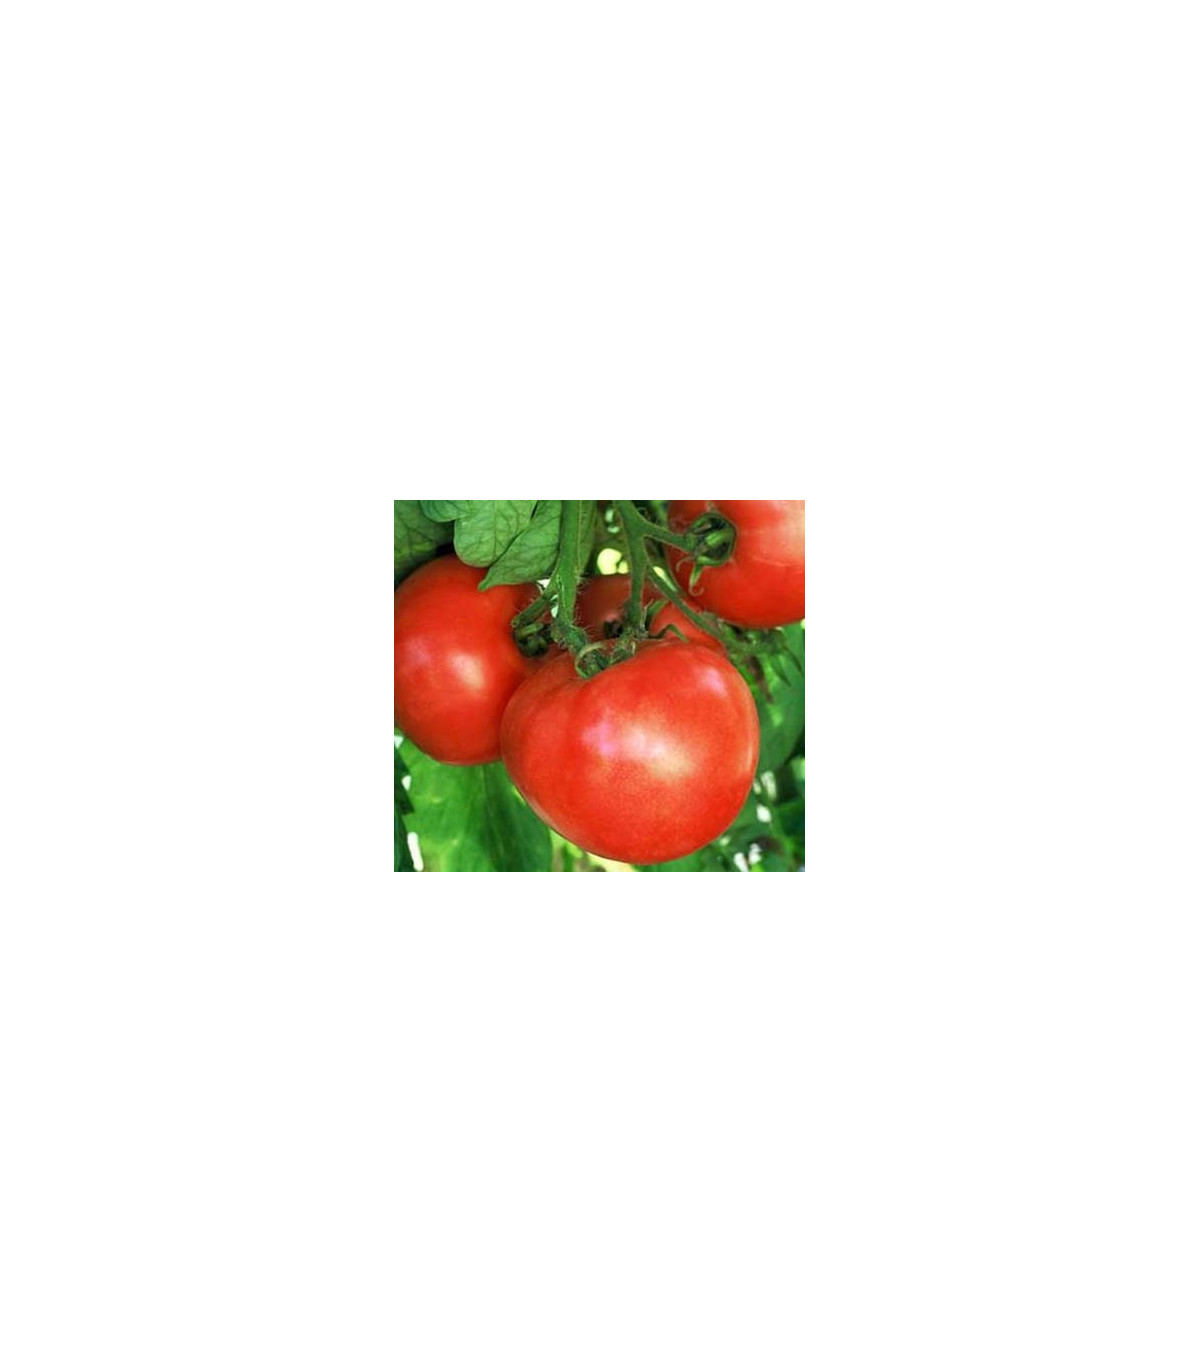 Paradajka skorý zázrak - semená paradajky - 6 ks